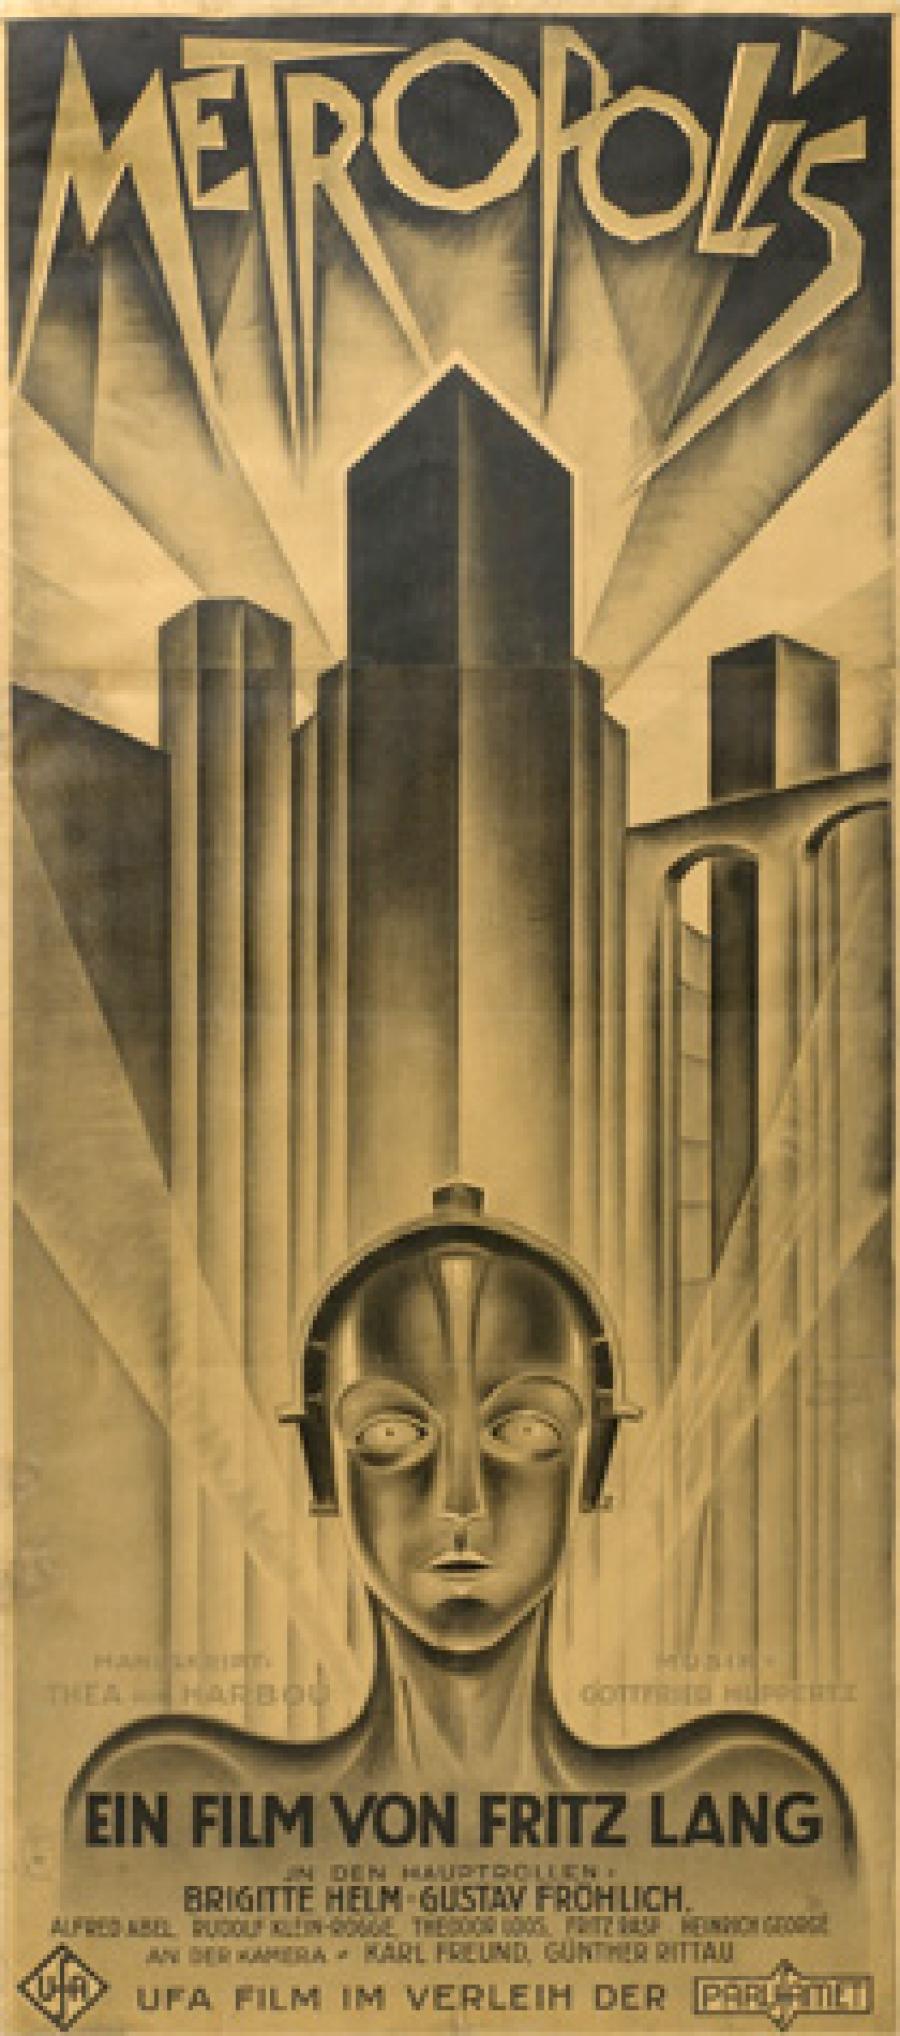 Billede af filmplakaten for Metropolis